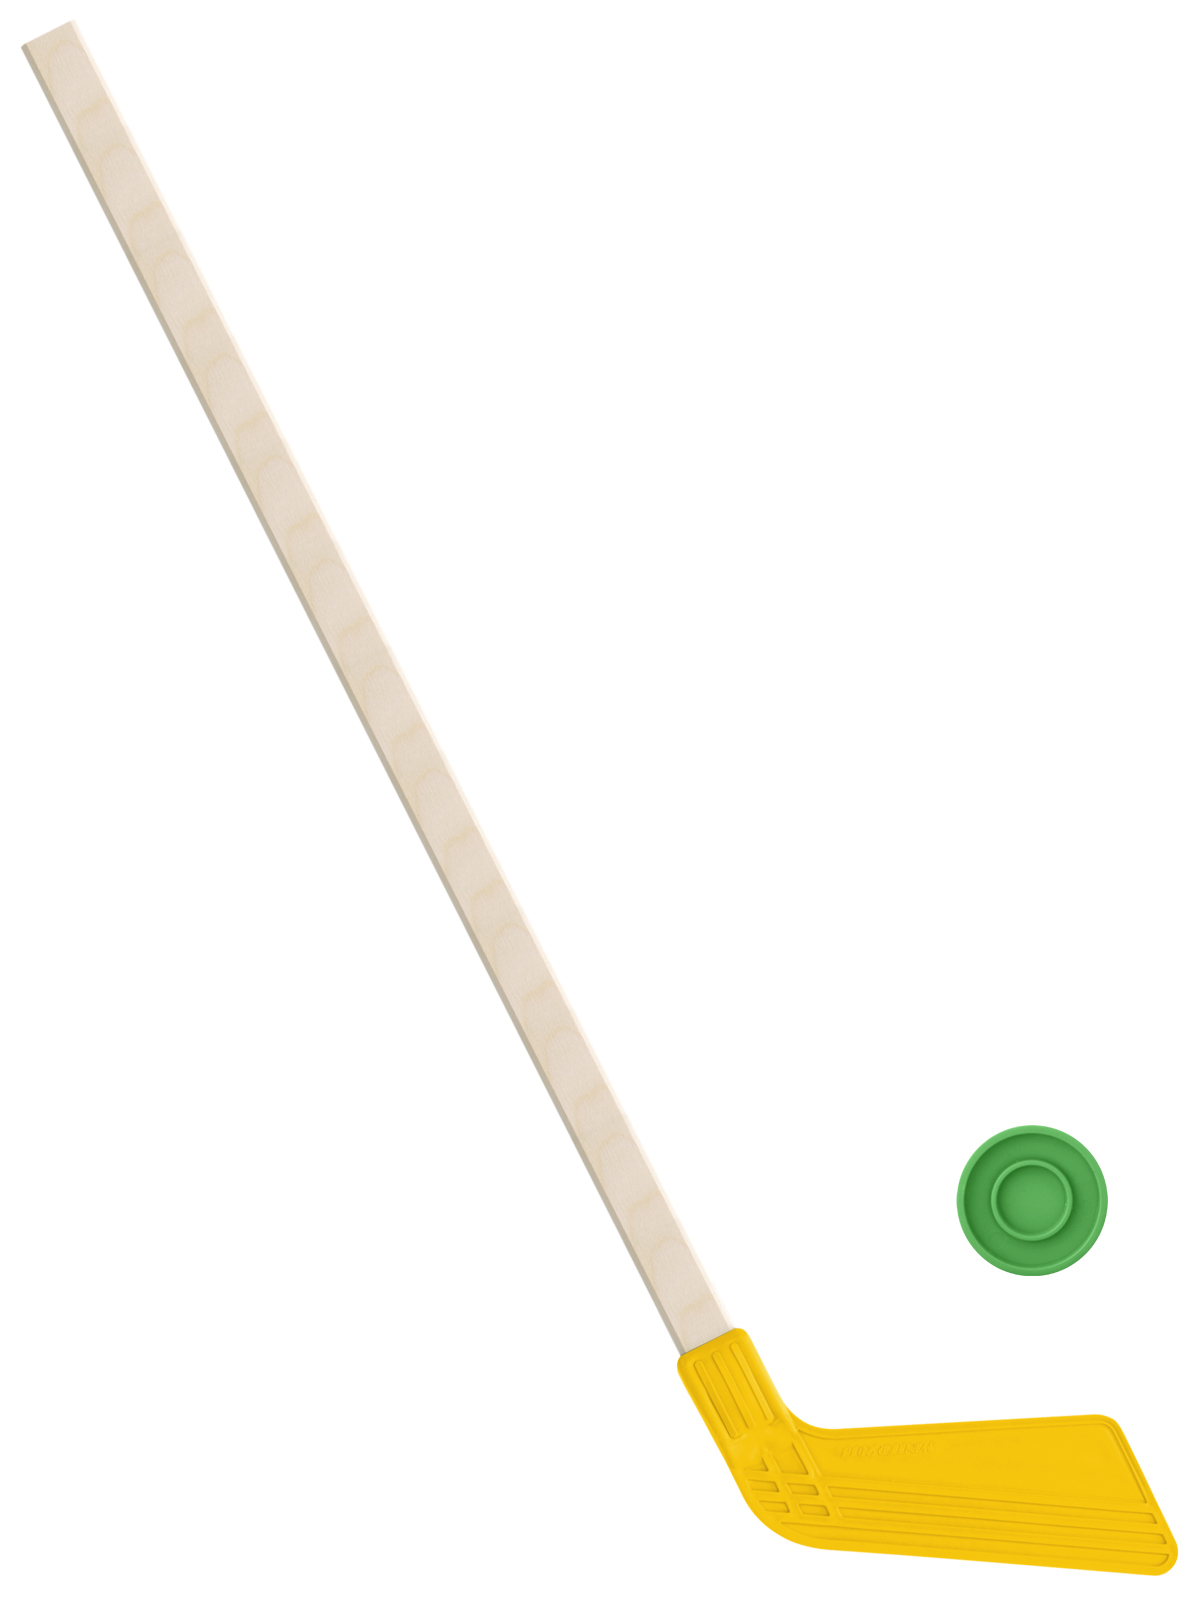 Детский хоккейный набор Задира-плюс, клюшка хоккейная 80 см (желтая)+шайба